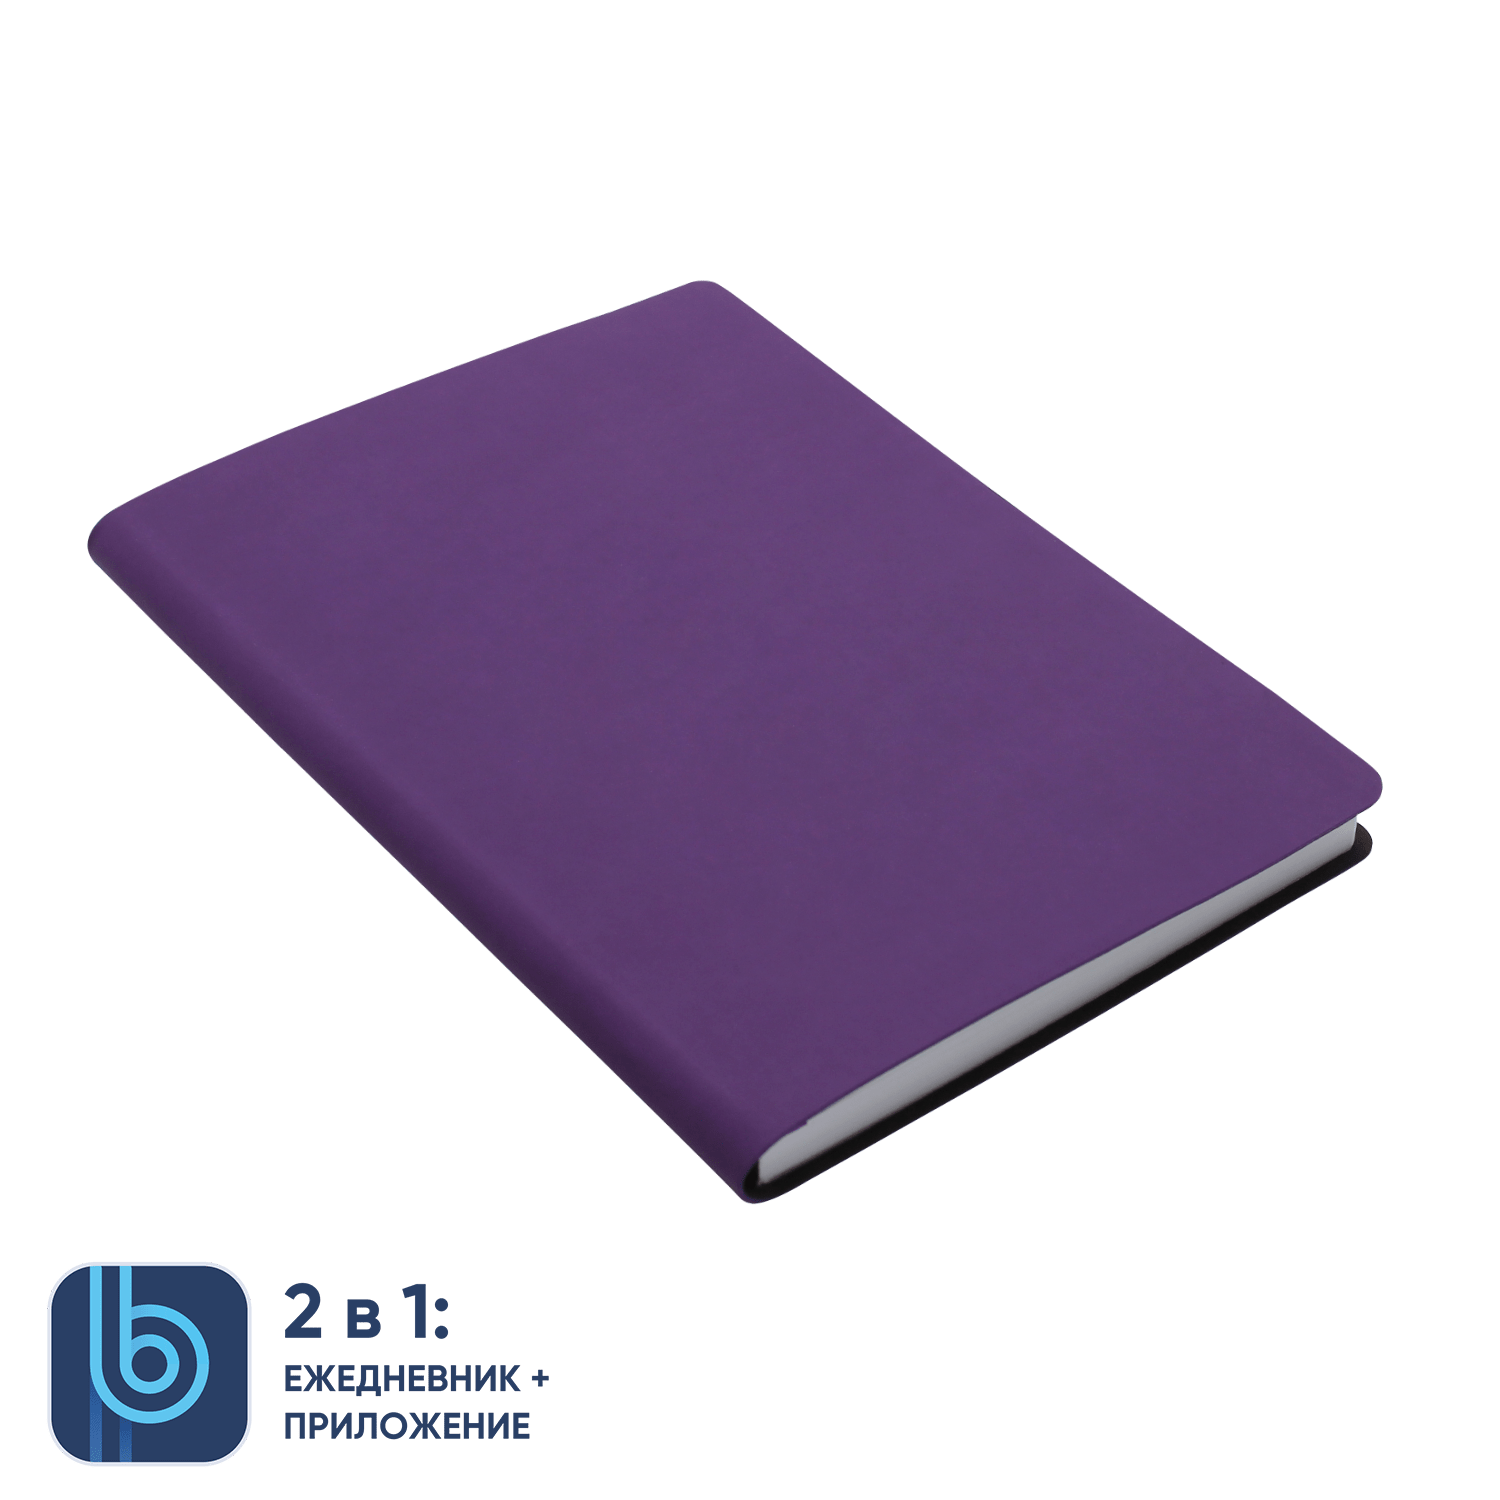 Ежедневник Bplanner.01 violet (фиолетовый), фиолетовый, картон